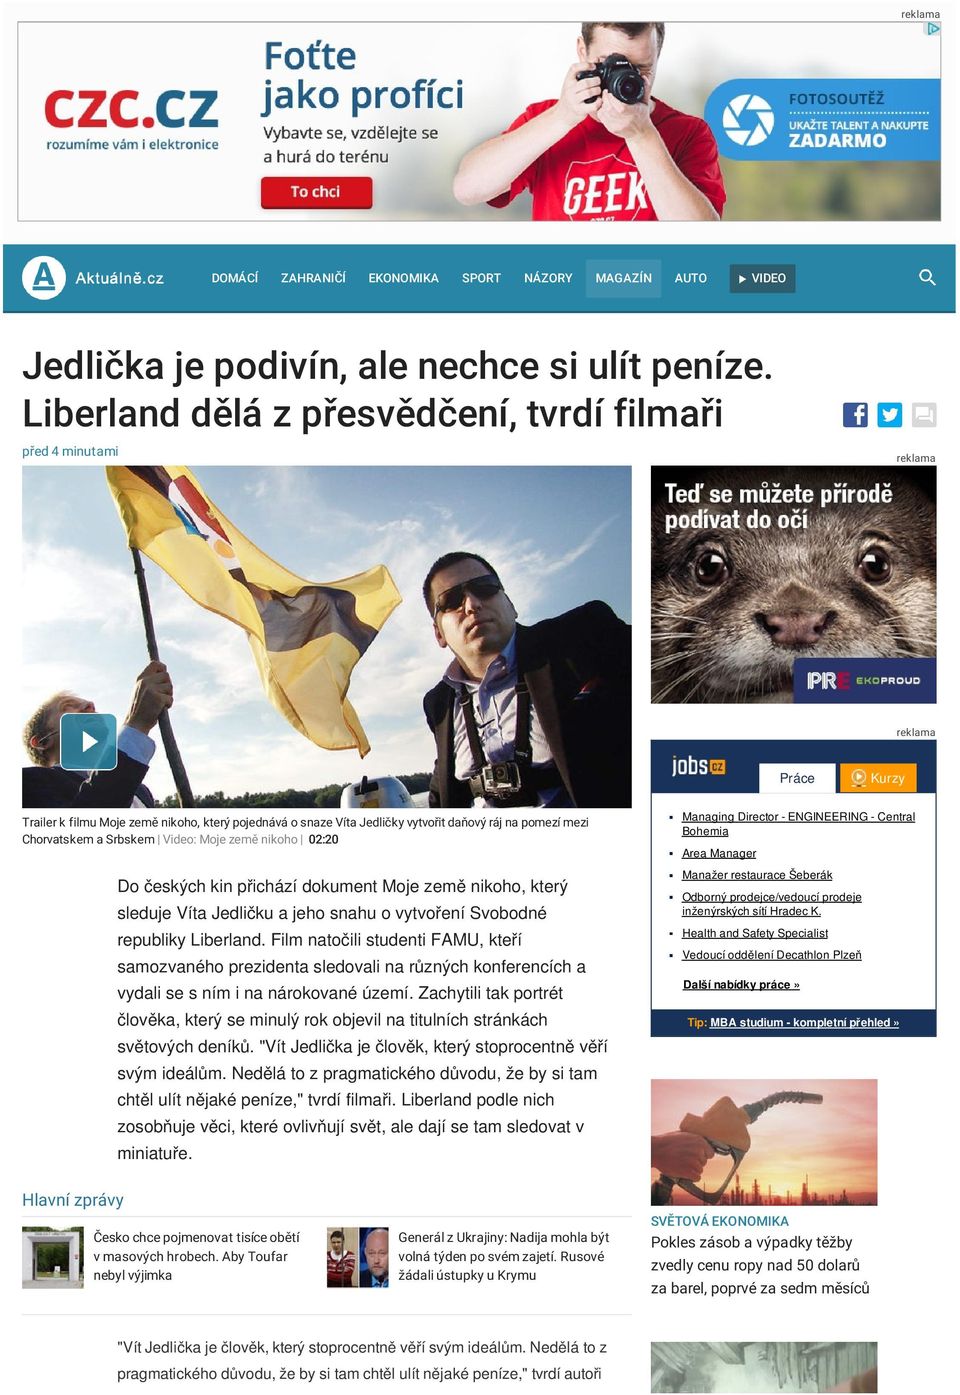 Srbskem Video: Moje země nikoho 02:20 Do českých kin přichází dokument Moje země nikoho, který sleduje Víta Jedličku a jeho snahu o vytvoření Svobodné republiky Liberland.